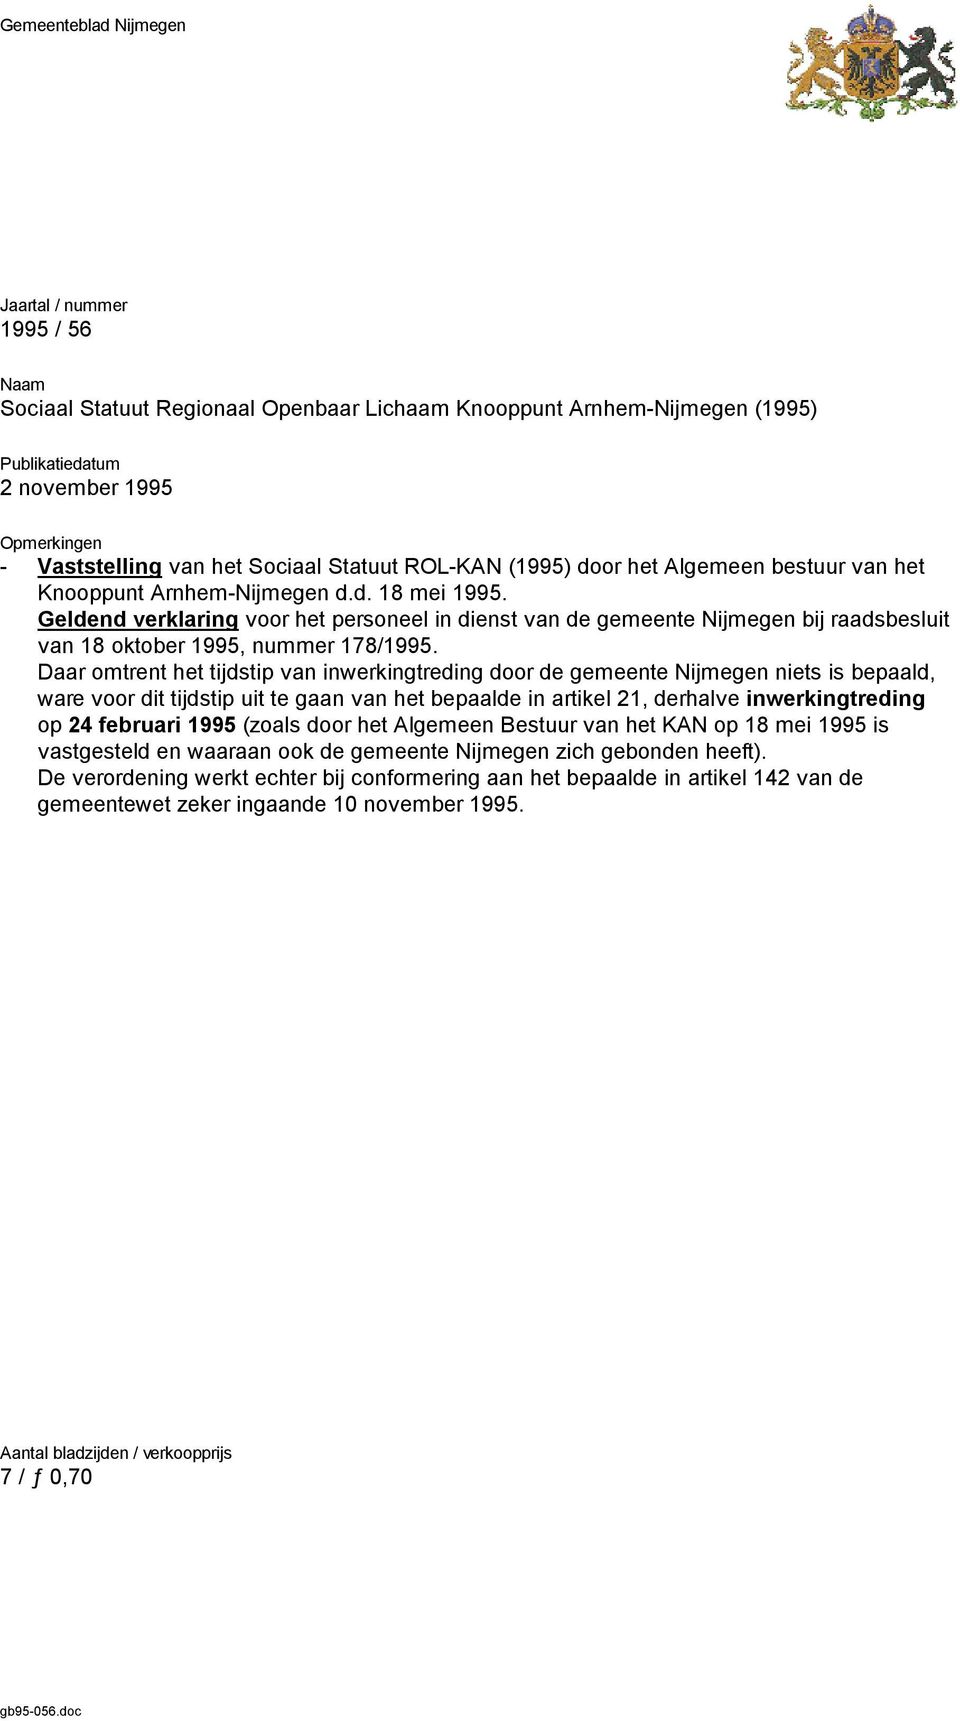 Geldend verklaring voor het personeel in dienst van de gemeente Nijmegen bij raadsbesluit van 18 oktober 1995, nummer 178/1995.